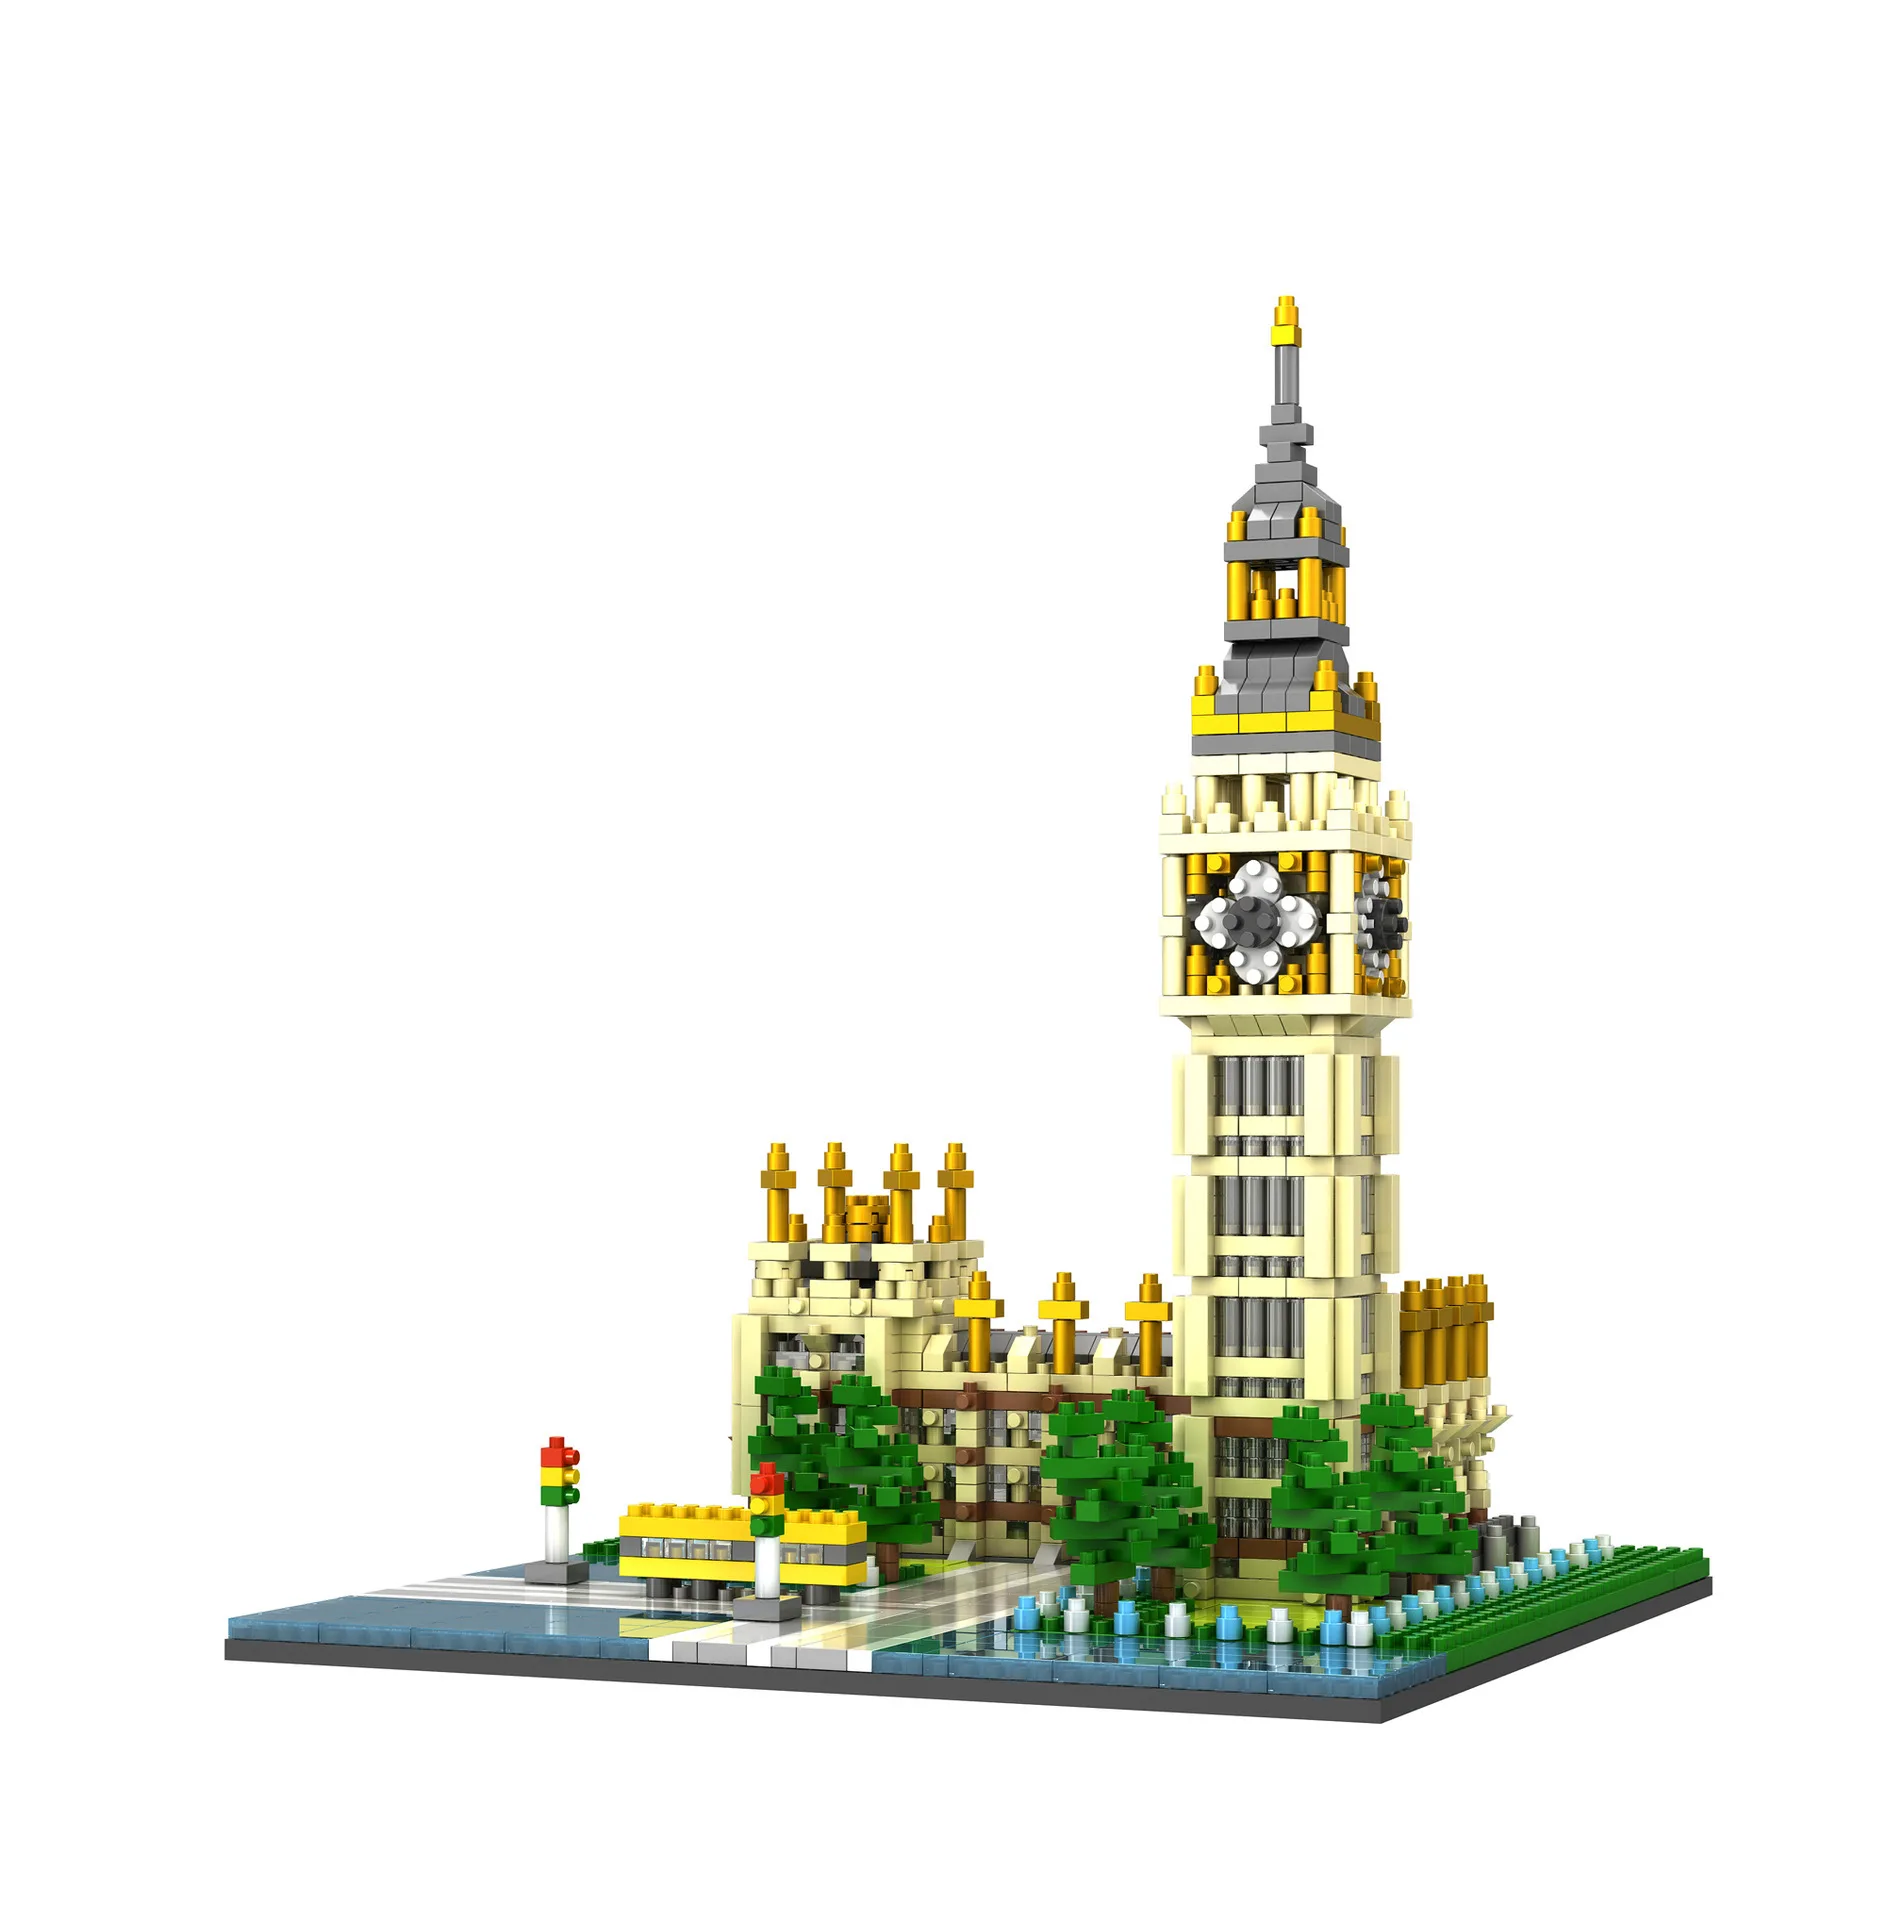 Всемирно известная архитектура Биг Бен nanobrick Elizabeth Tower Лондон Англия Великобритания микро алмаз строительный блок модель игрушки для подарков